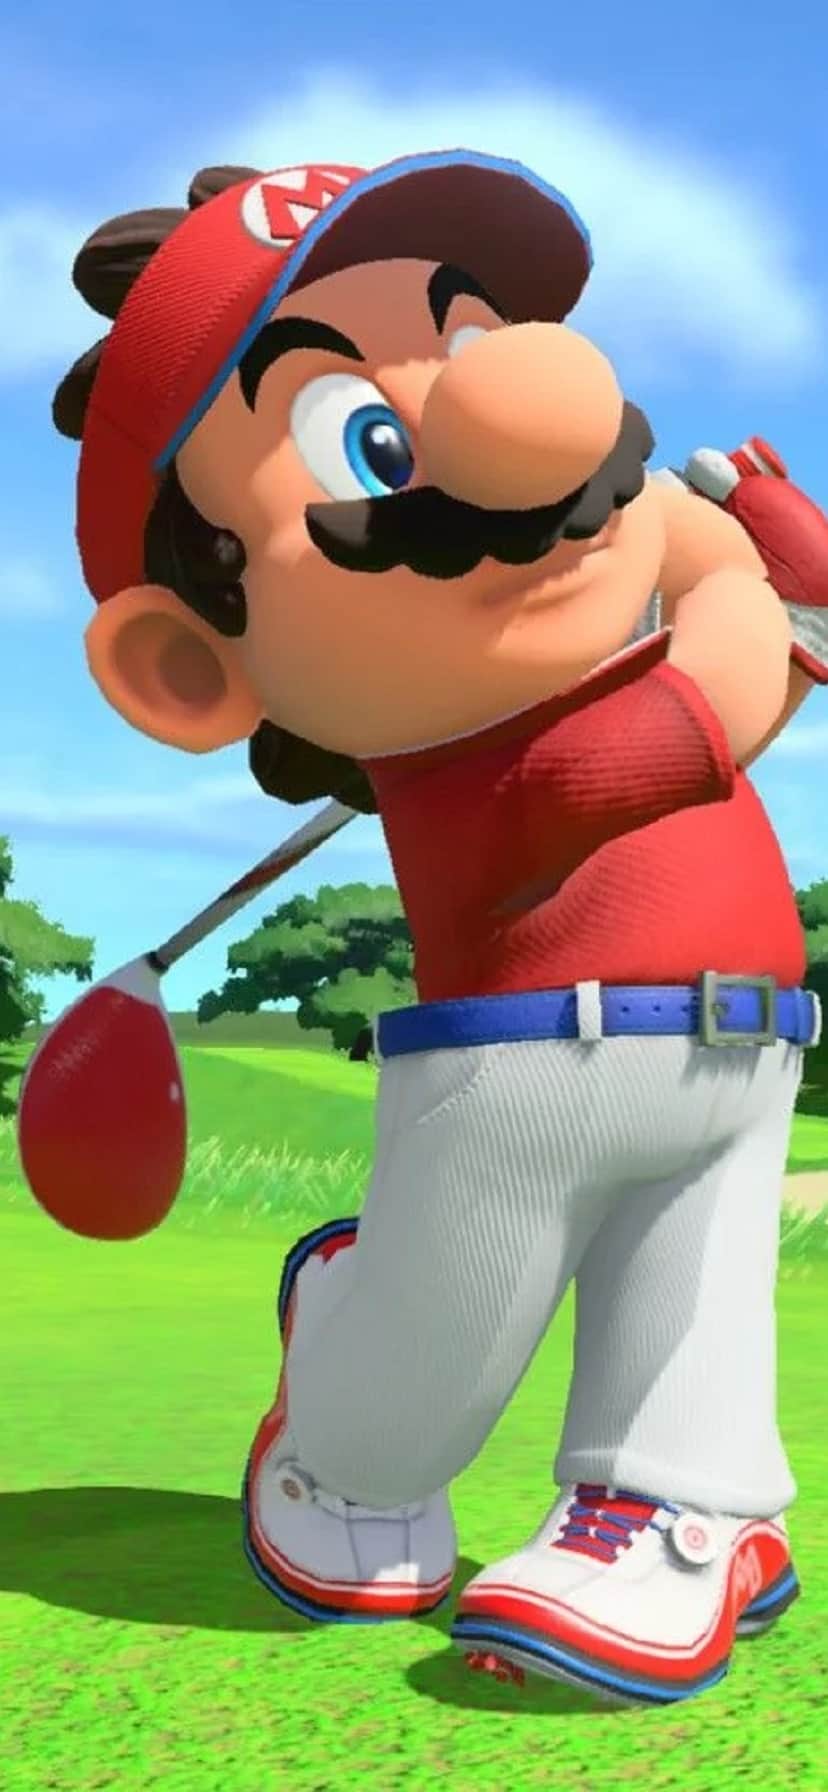 Nintendo delays Super Mario Bros. movie to 2023